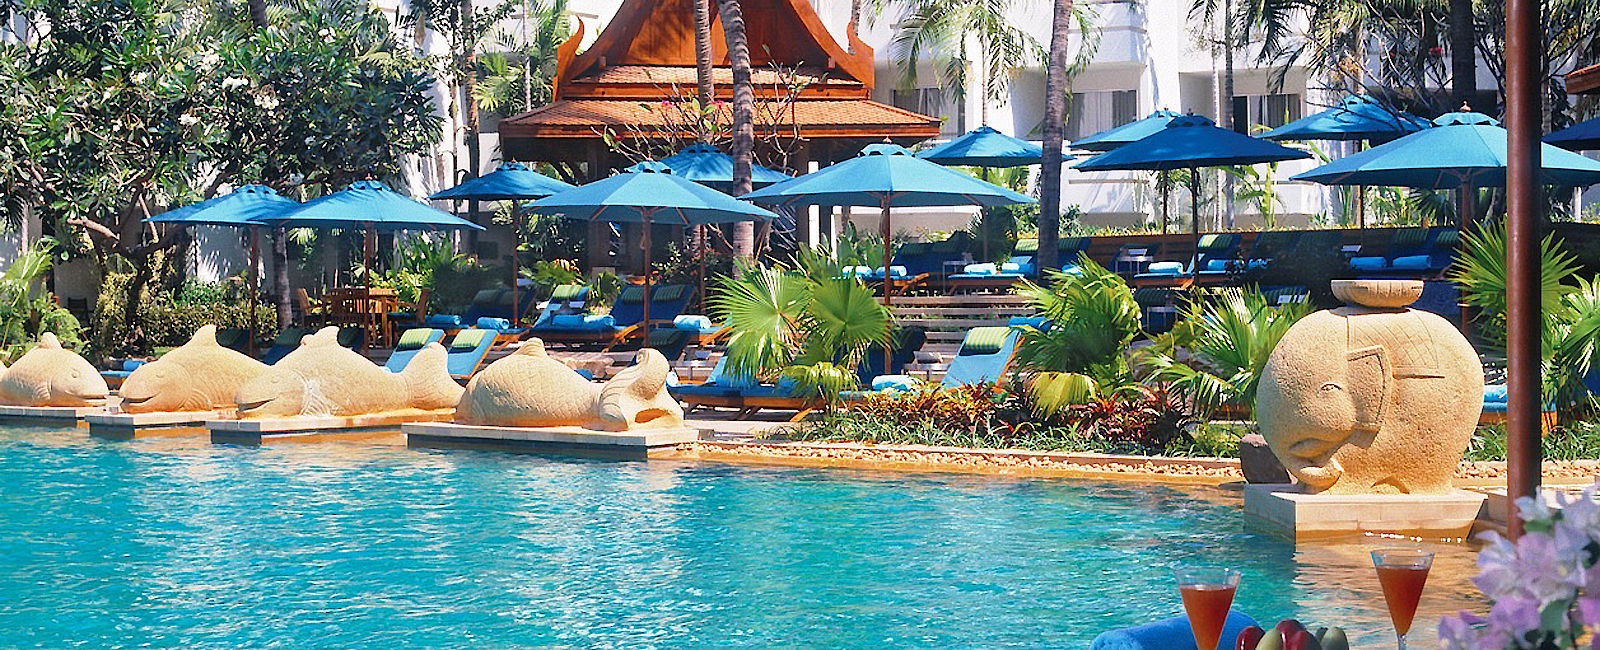 HOTELTEST
 Pattaya Marriott Resort & Spa 
 Mitten im boomenden Hotelmarkt: Das Marriott Pattaya 